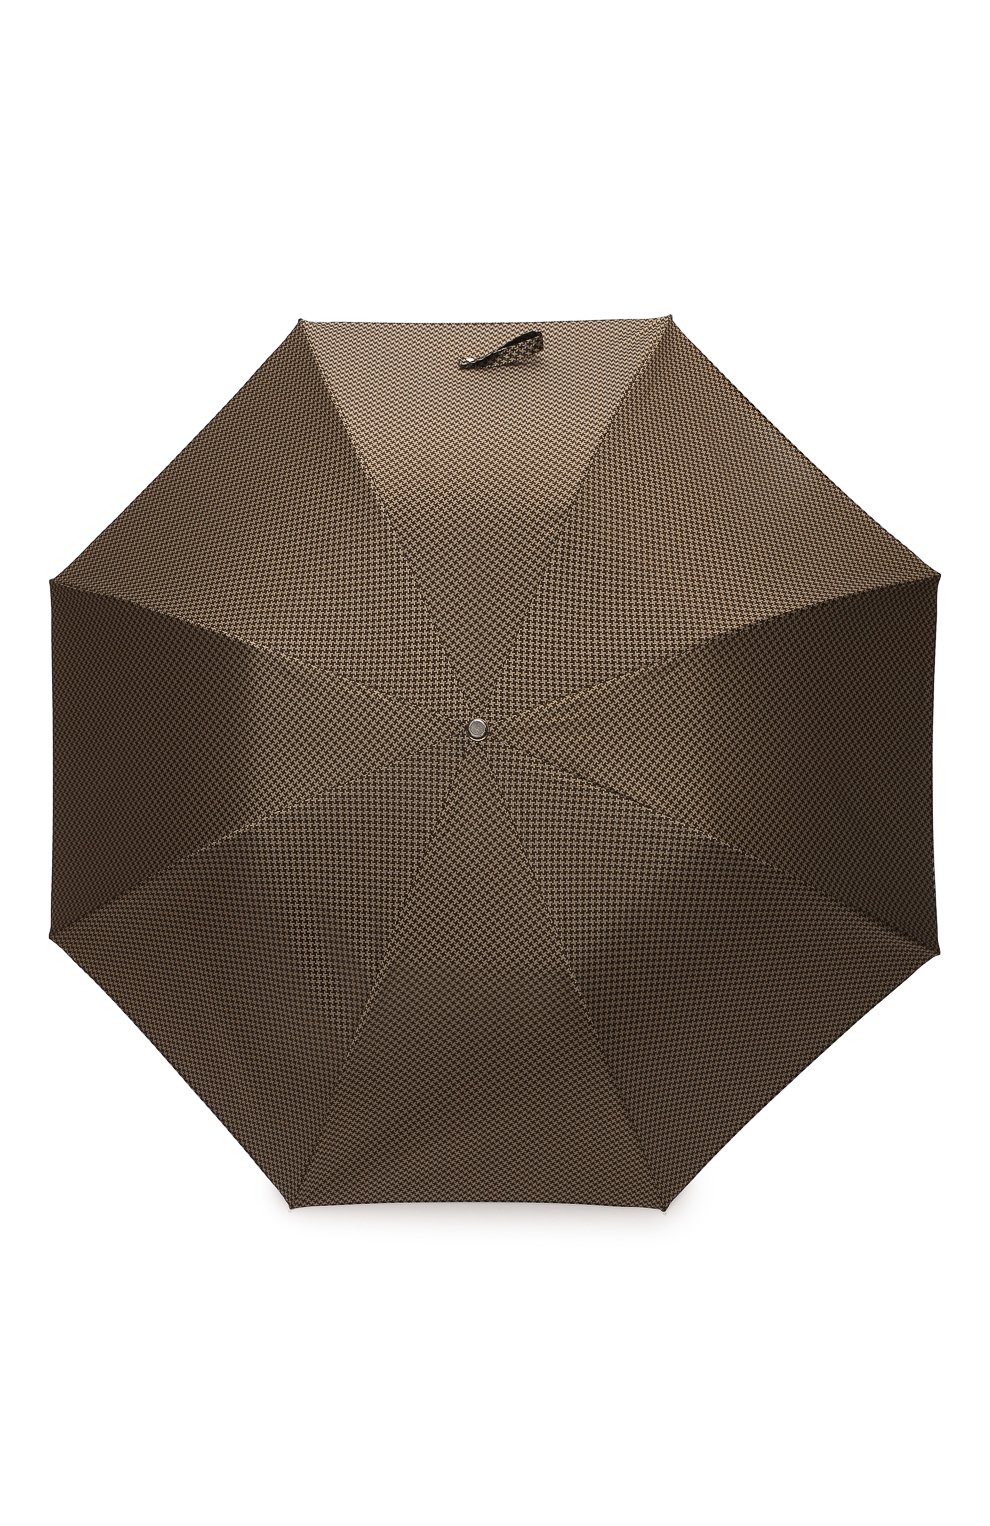 Мужской складной зонт PASOTTI OMBRELLI коричневого цвета, арт. 64S/52682/4/PELLE | Фото 1 (Материал: Текстиль, Синтетический материал, Металл)